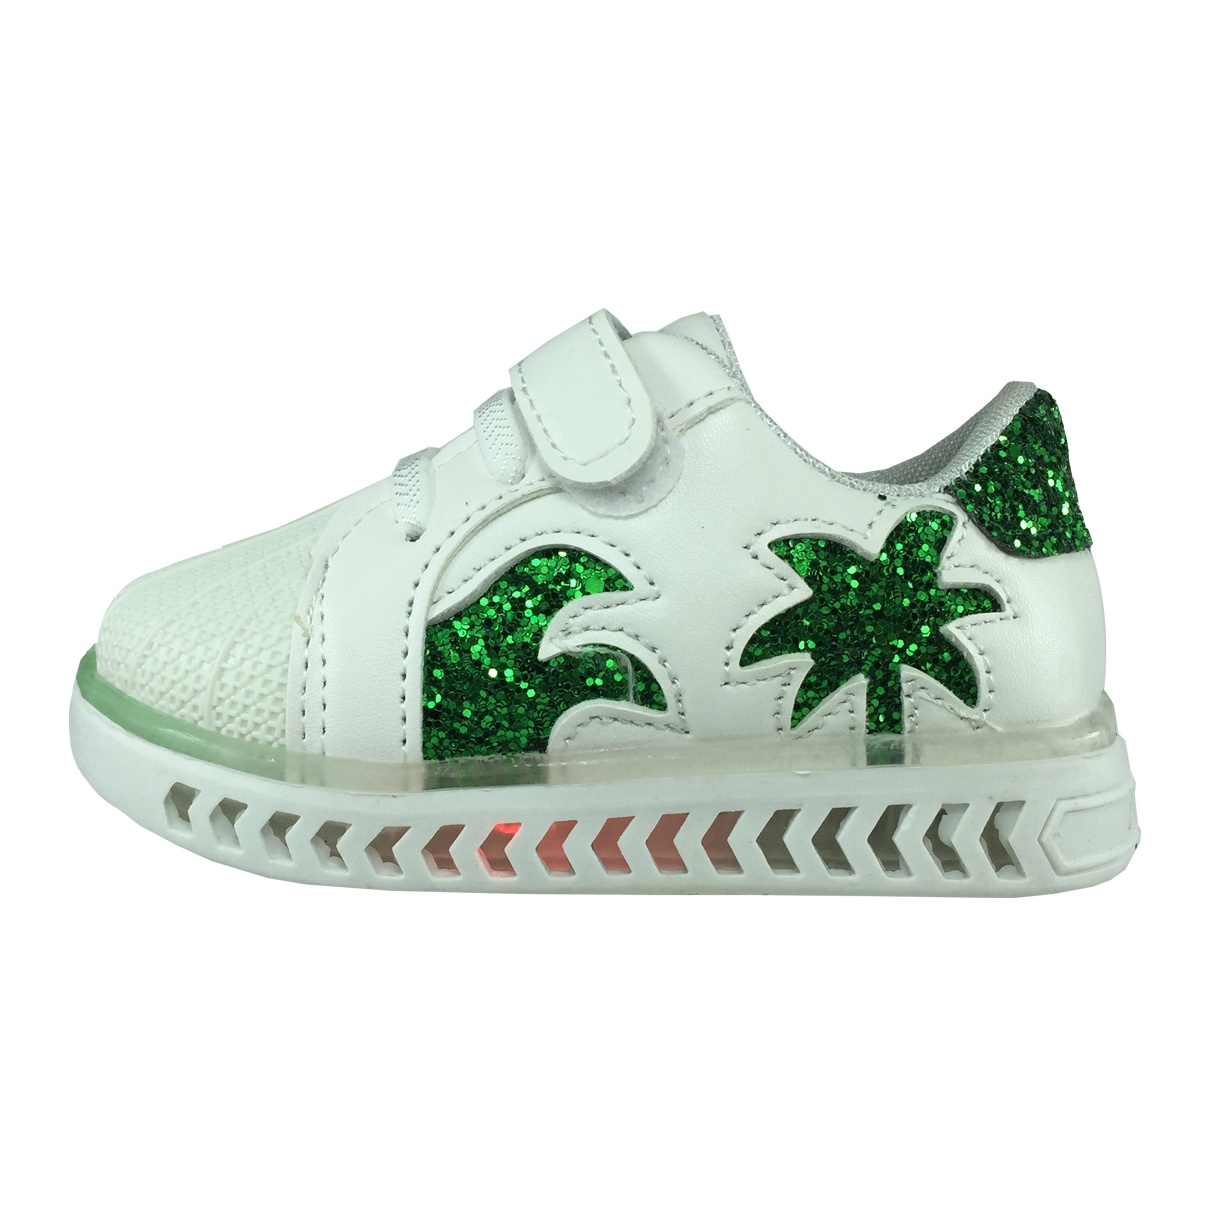 کفش نوزادی پا.ریس.جامه مدل چراغدار B459 رنگ سفید سبز